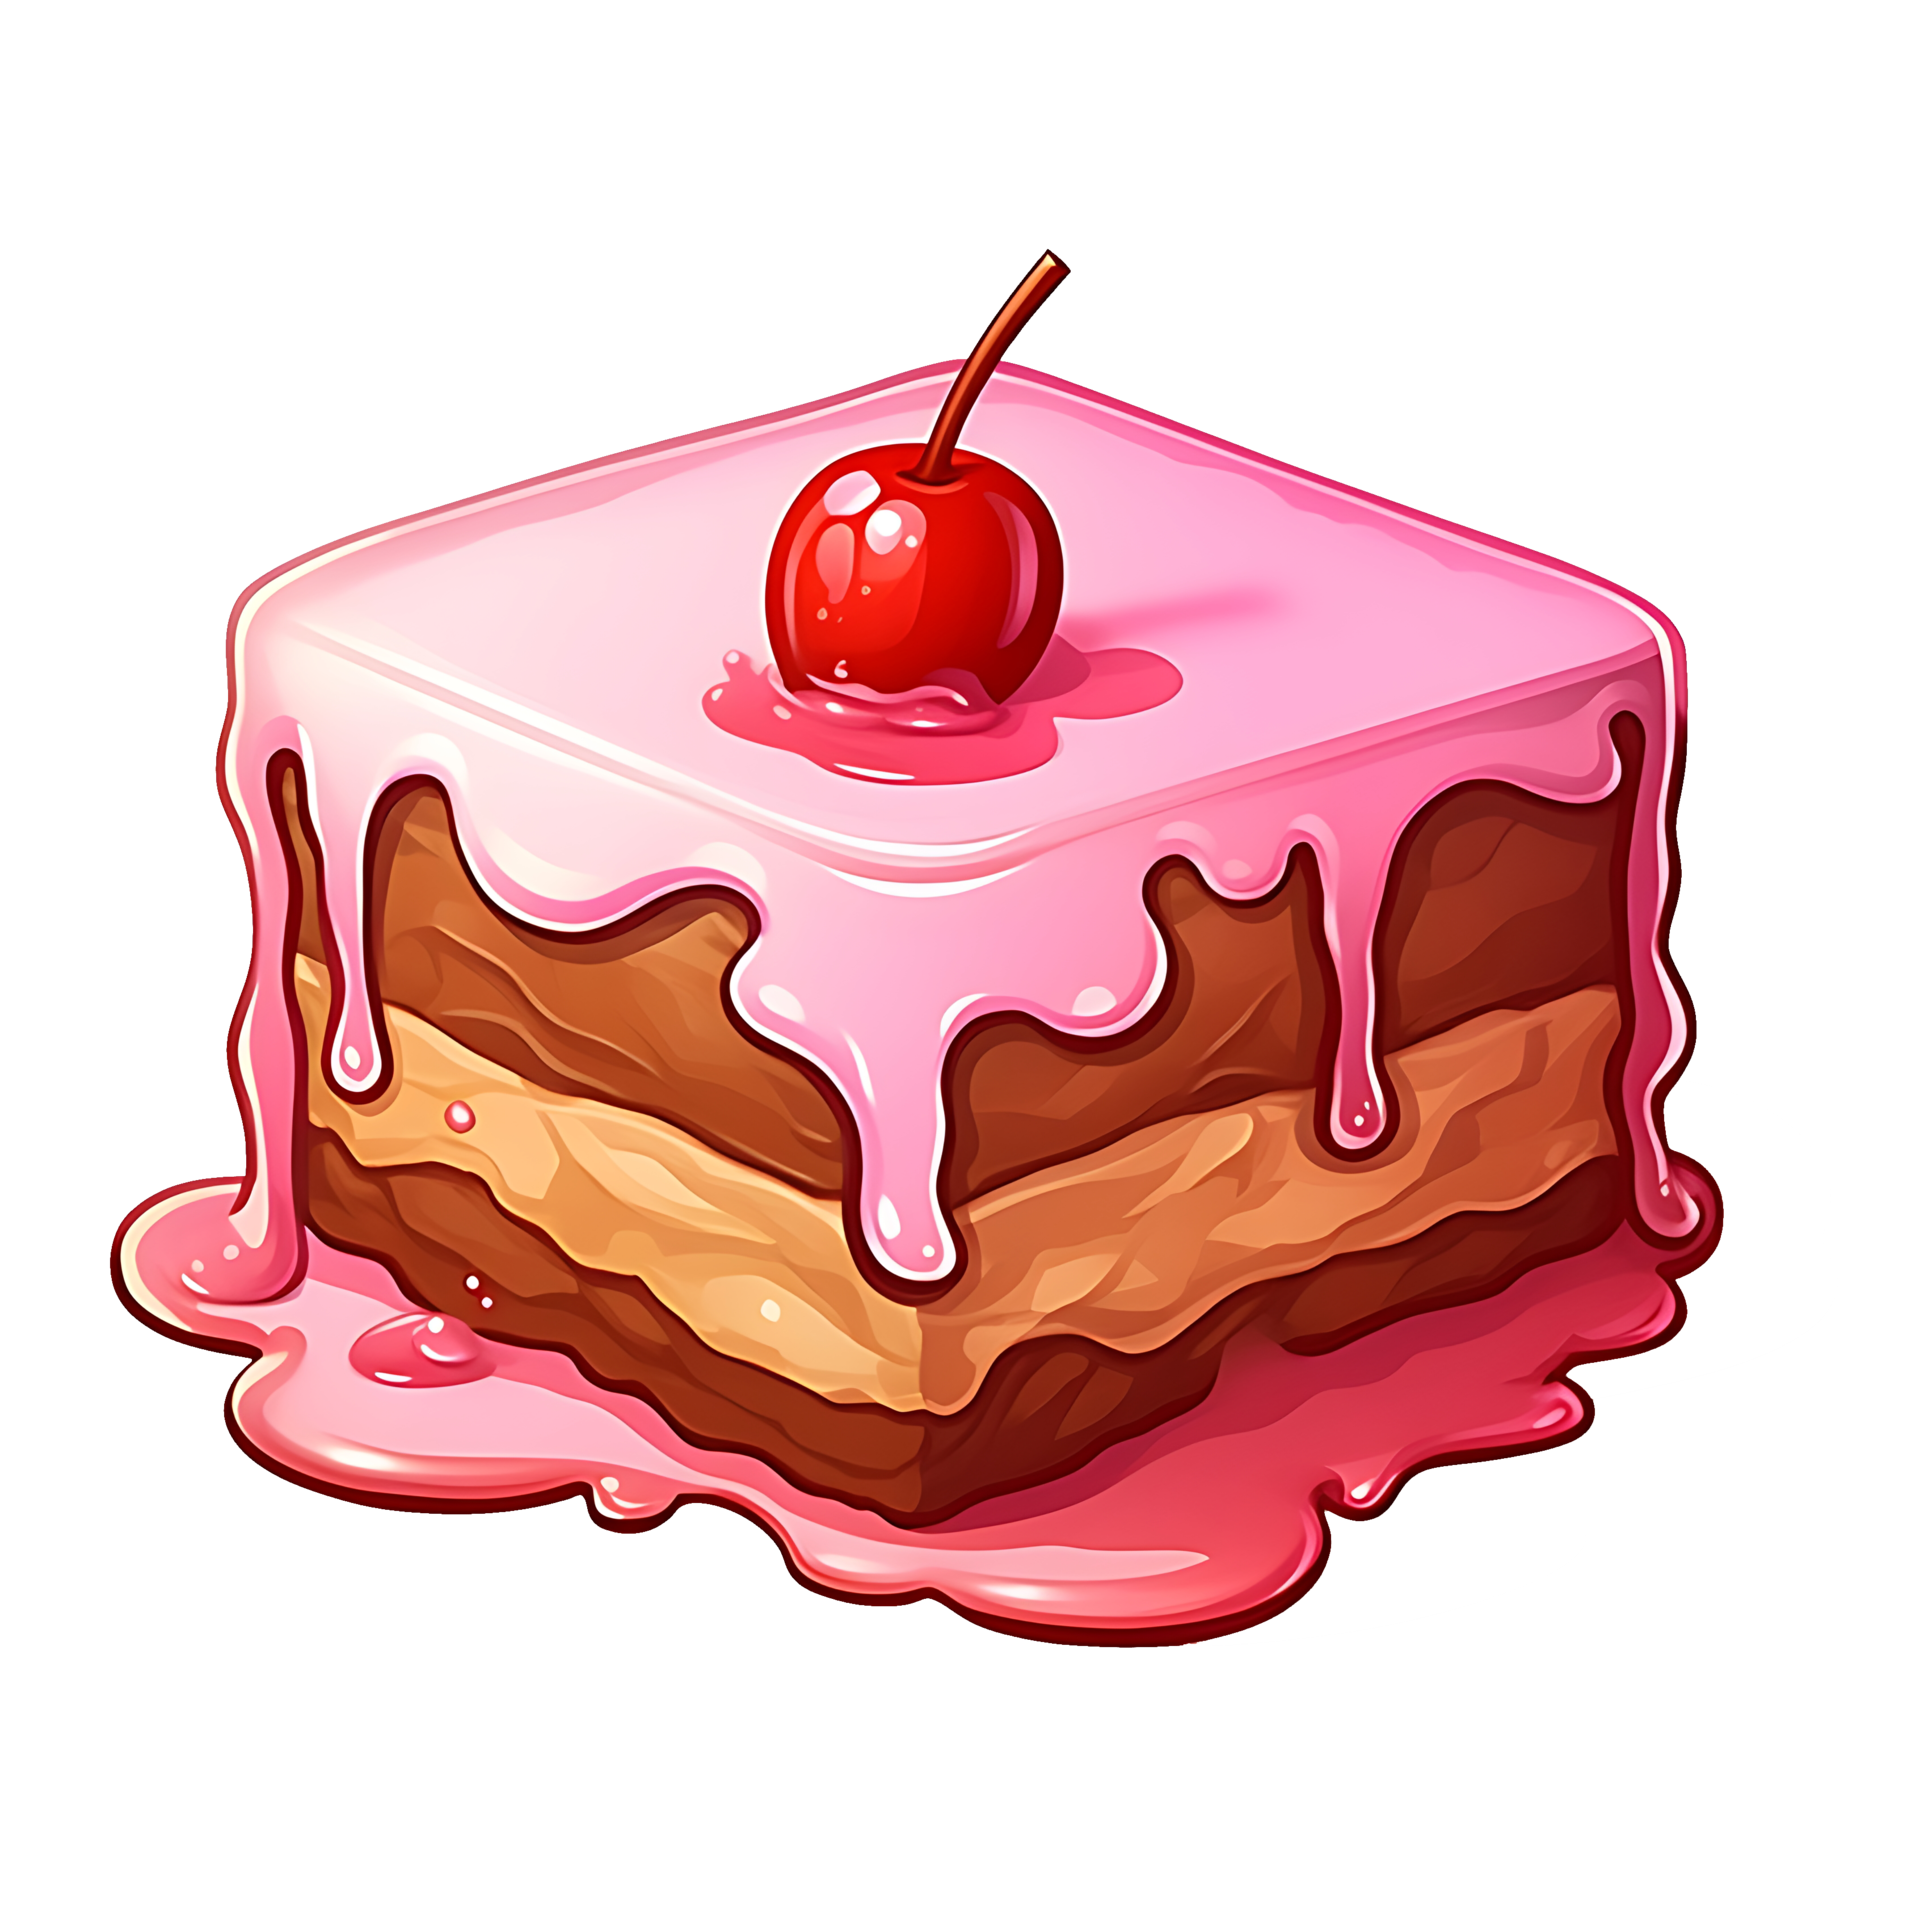 Pink Cake PNG Images & PSDs for Download | PixelSquid - S11304811D